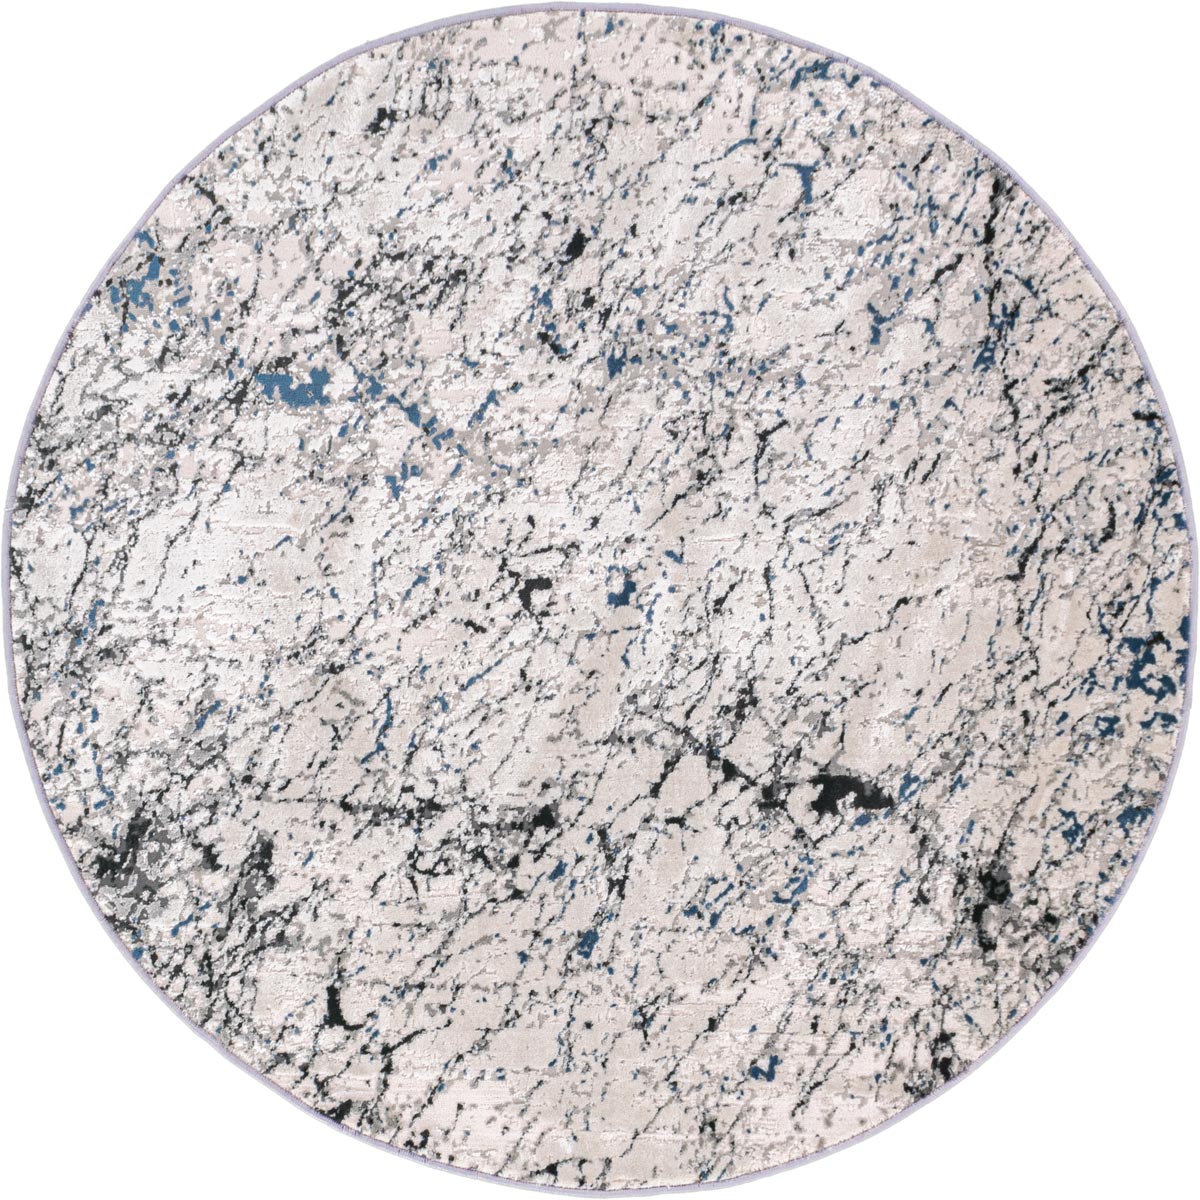 שטיח טורונטו 24 אפור/אפור כהה/כחול עגול | השטיח האדום